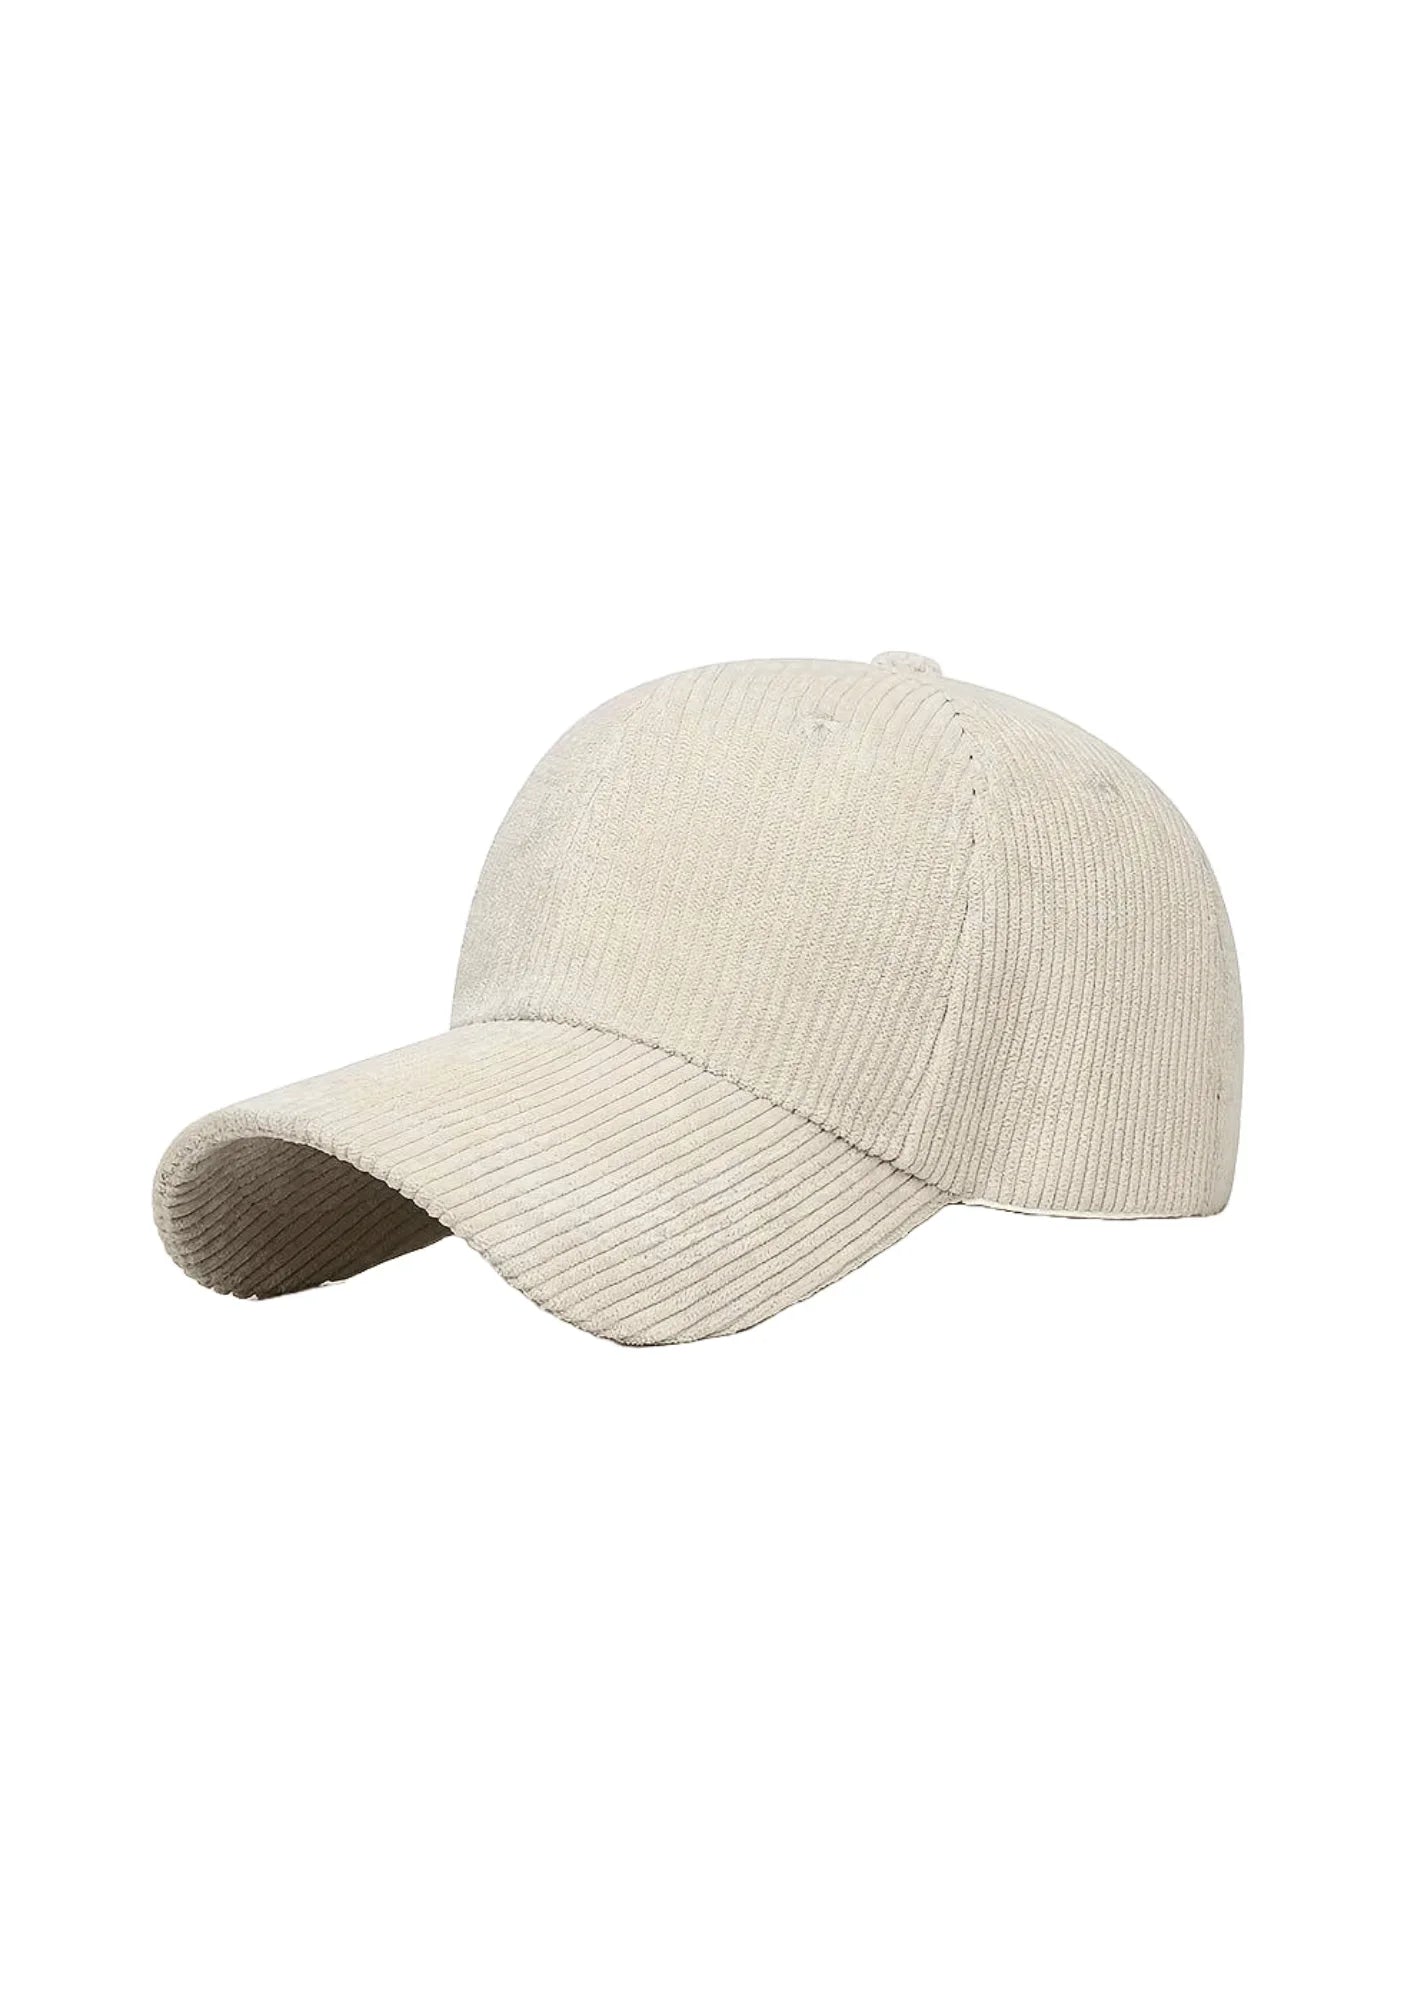 BEIGE CORDUROY CAP